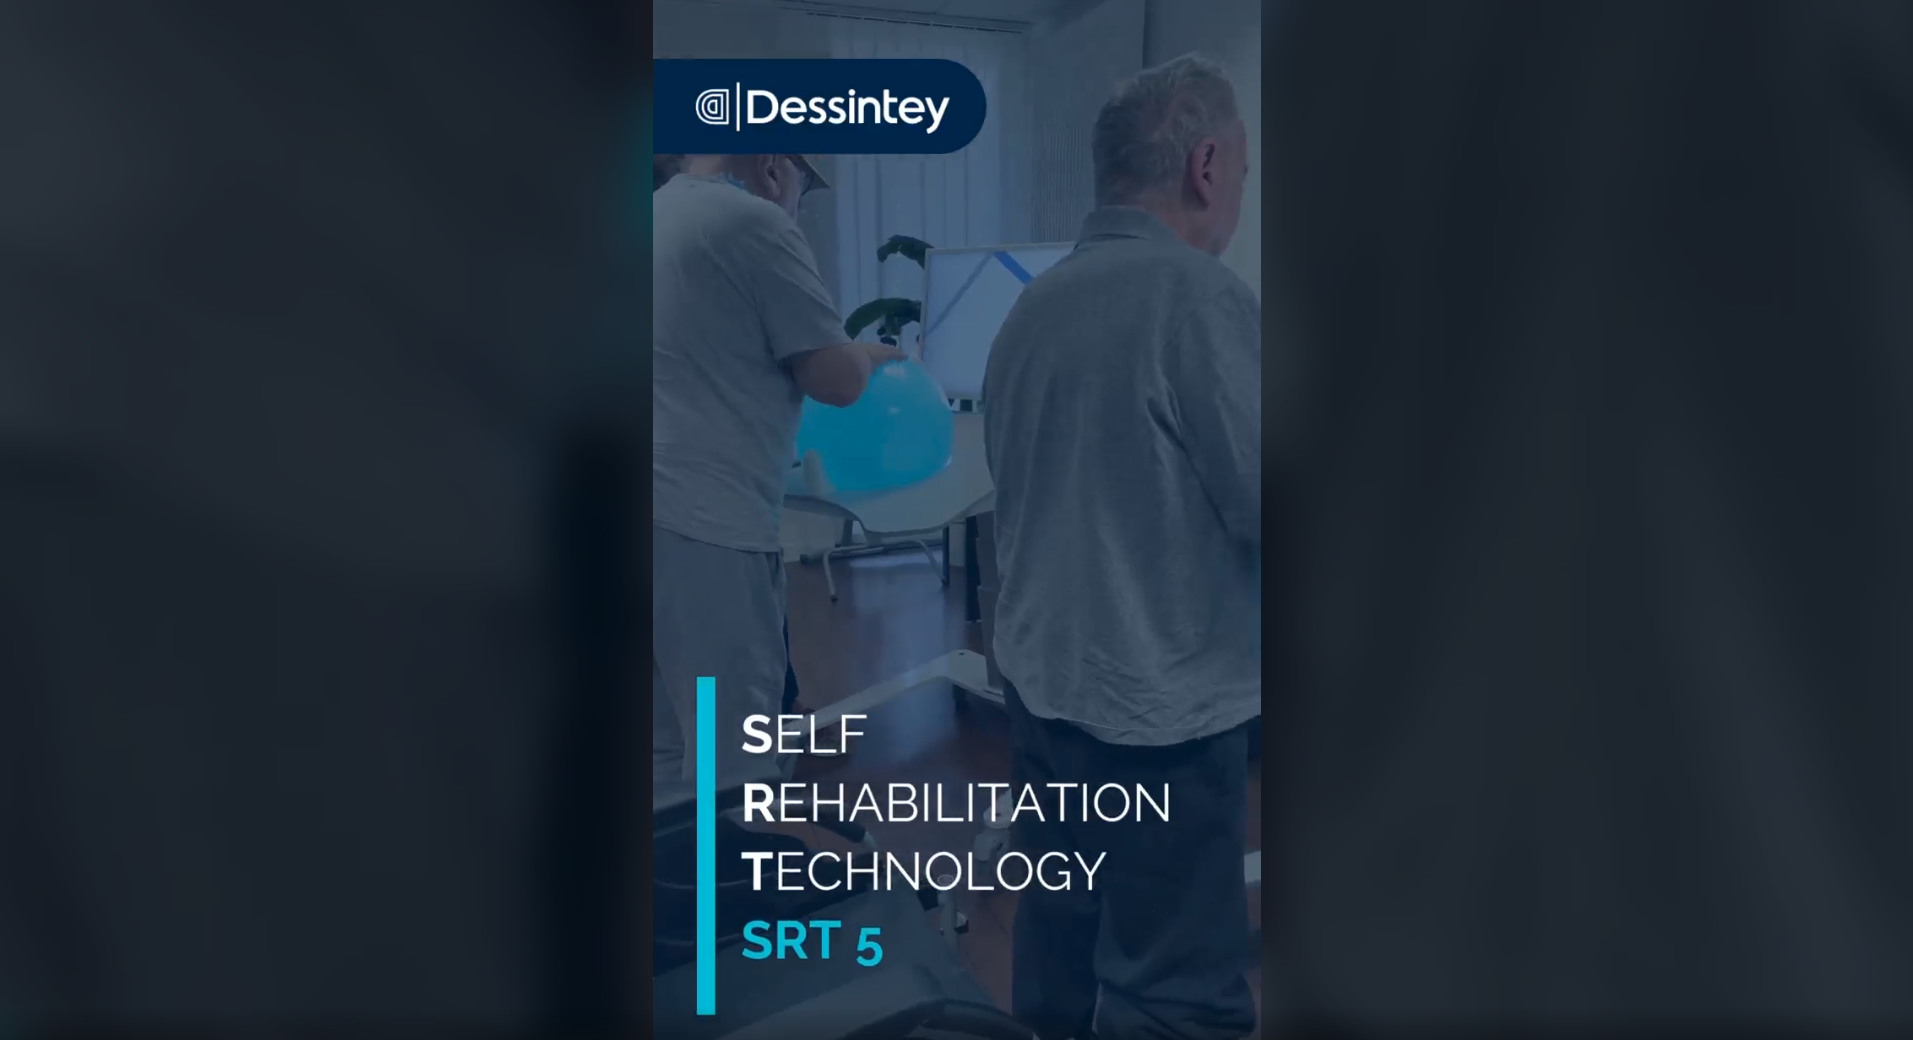 Dessintey SRT5 for elderly people